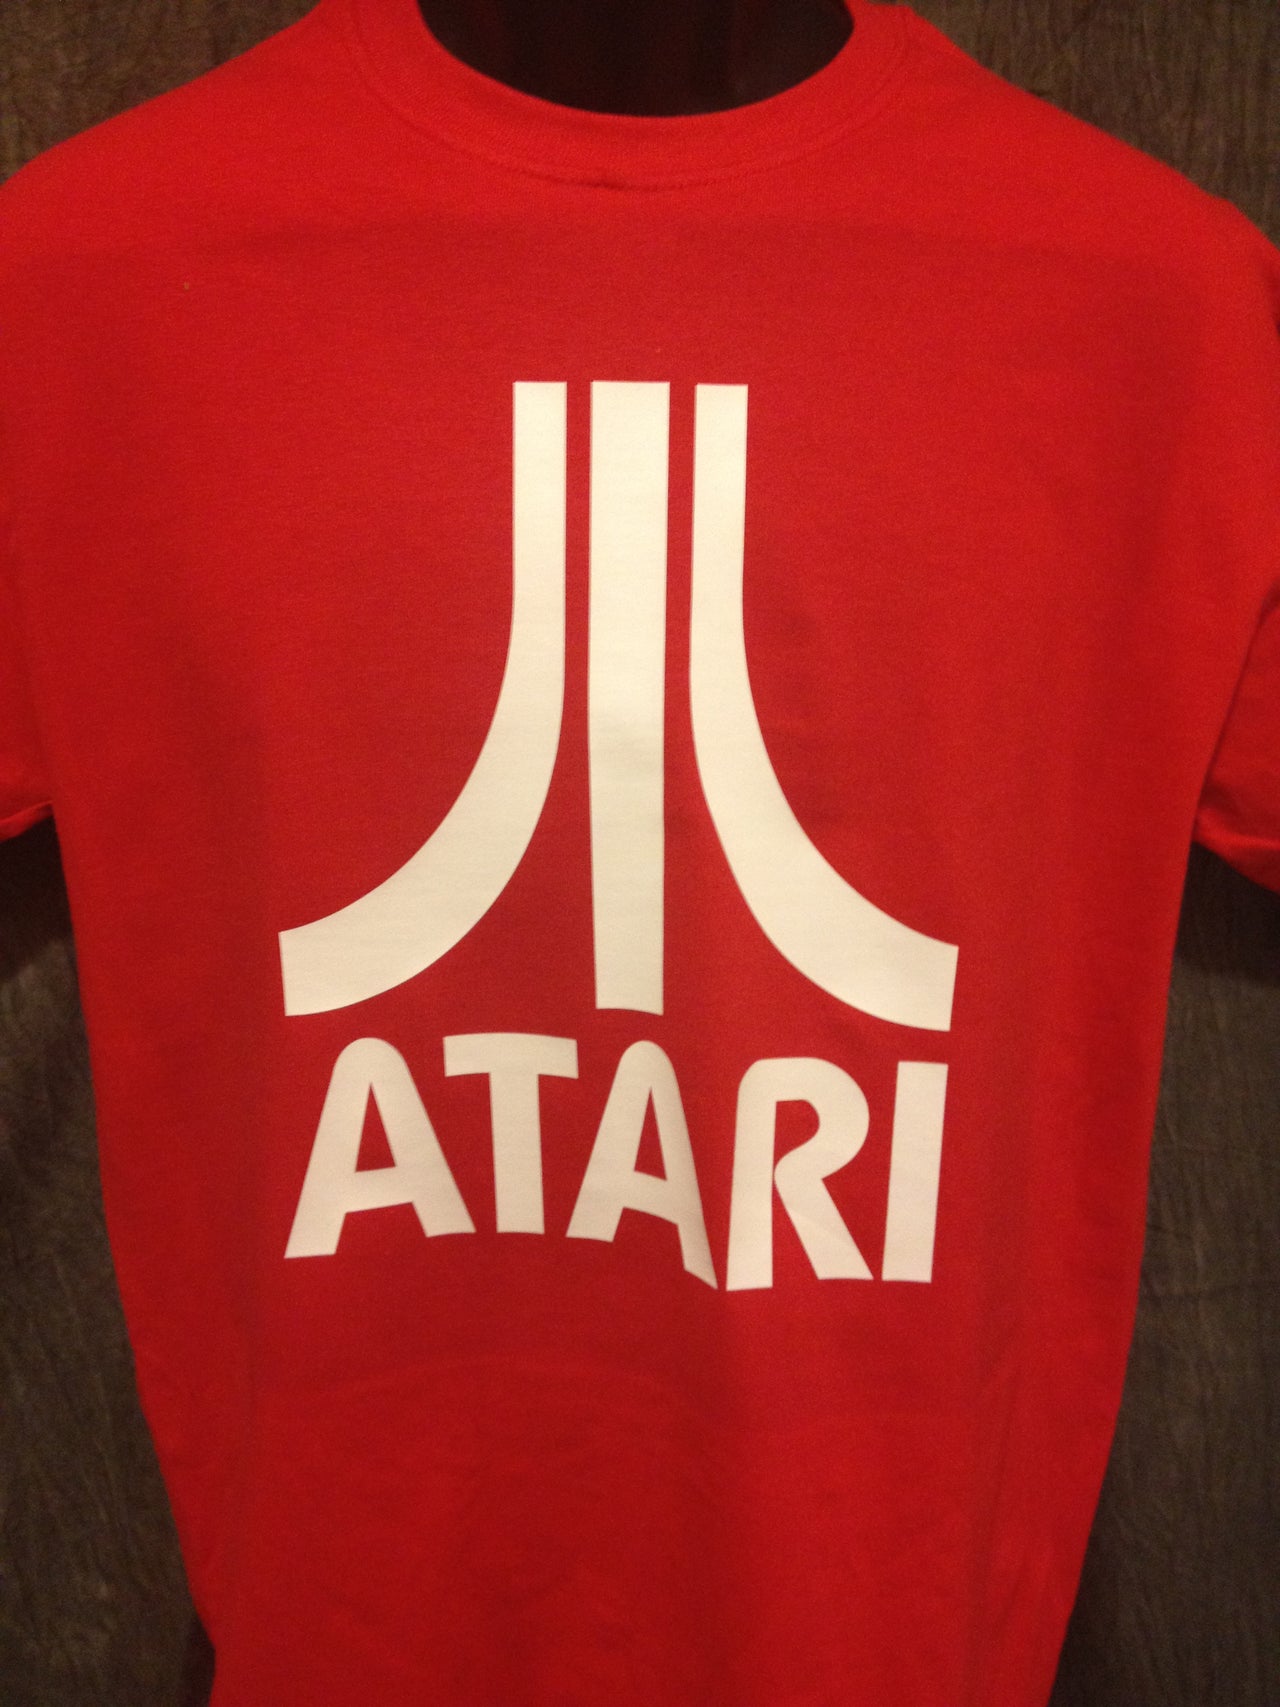 Atari Logo Tshirt: Red With White Print - TshirtNow.net - 2